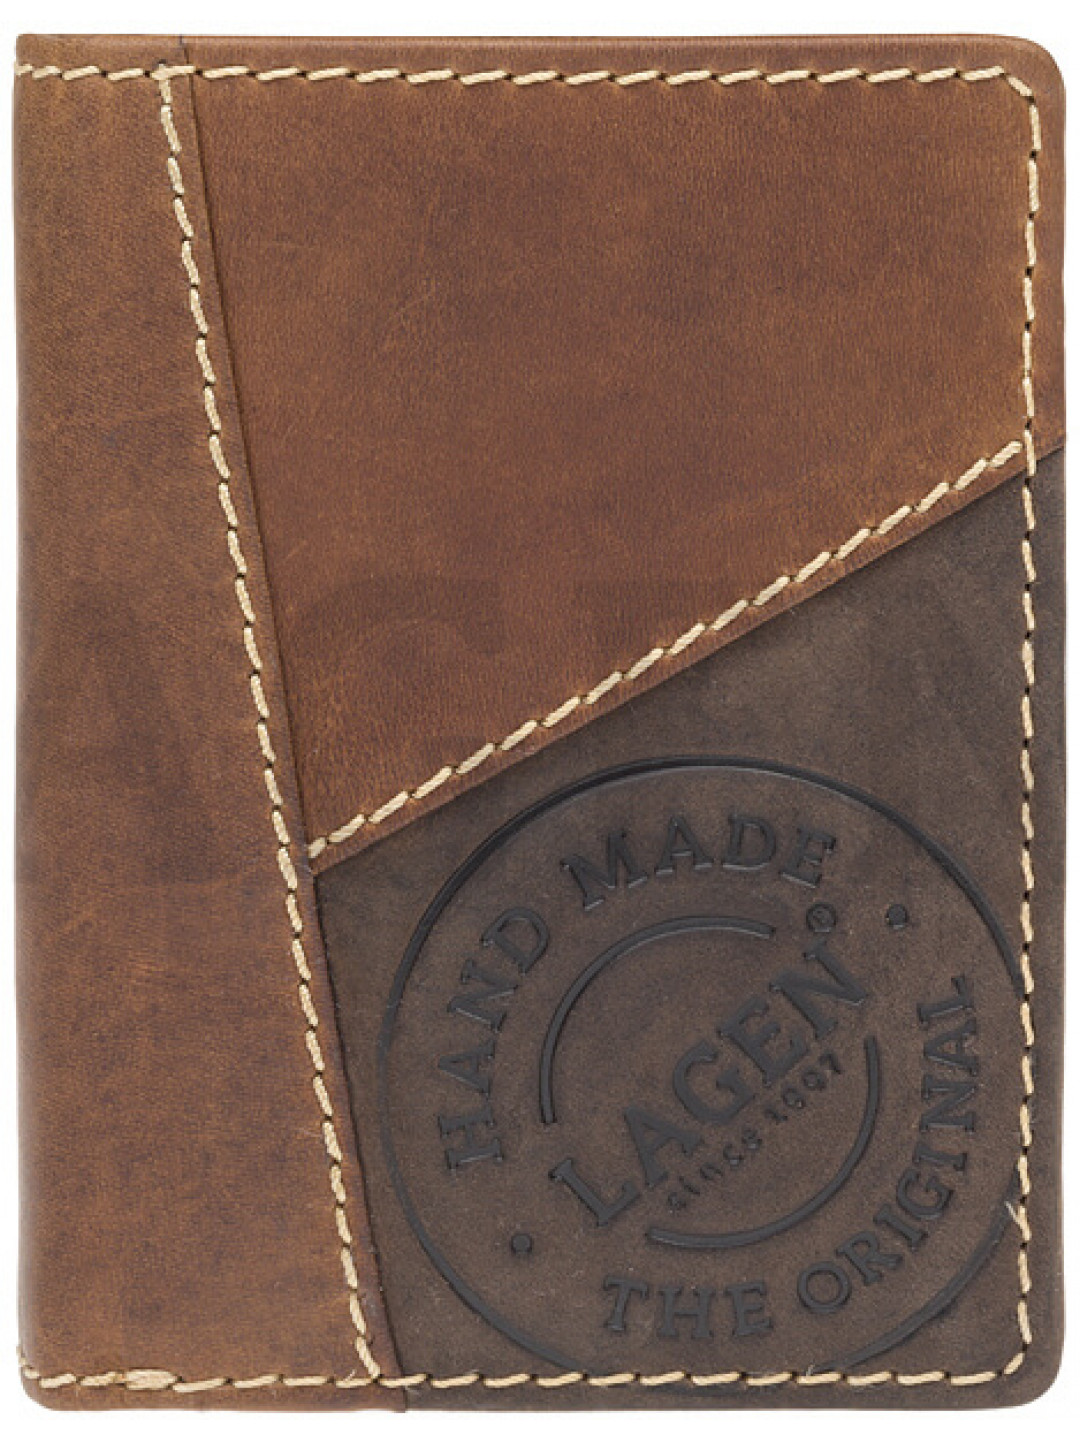 Lagen Pánská kožená peněženka 51145 TAN